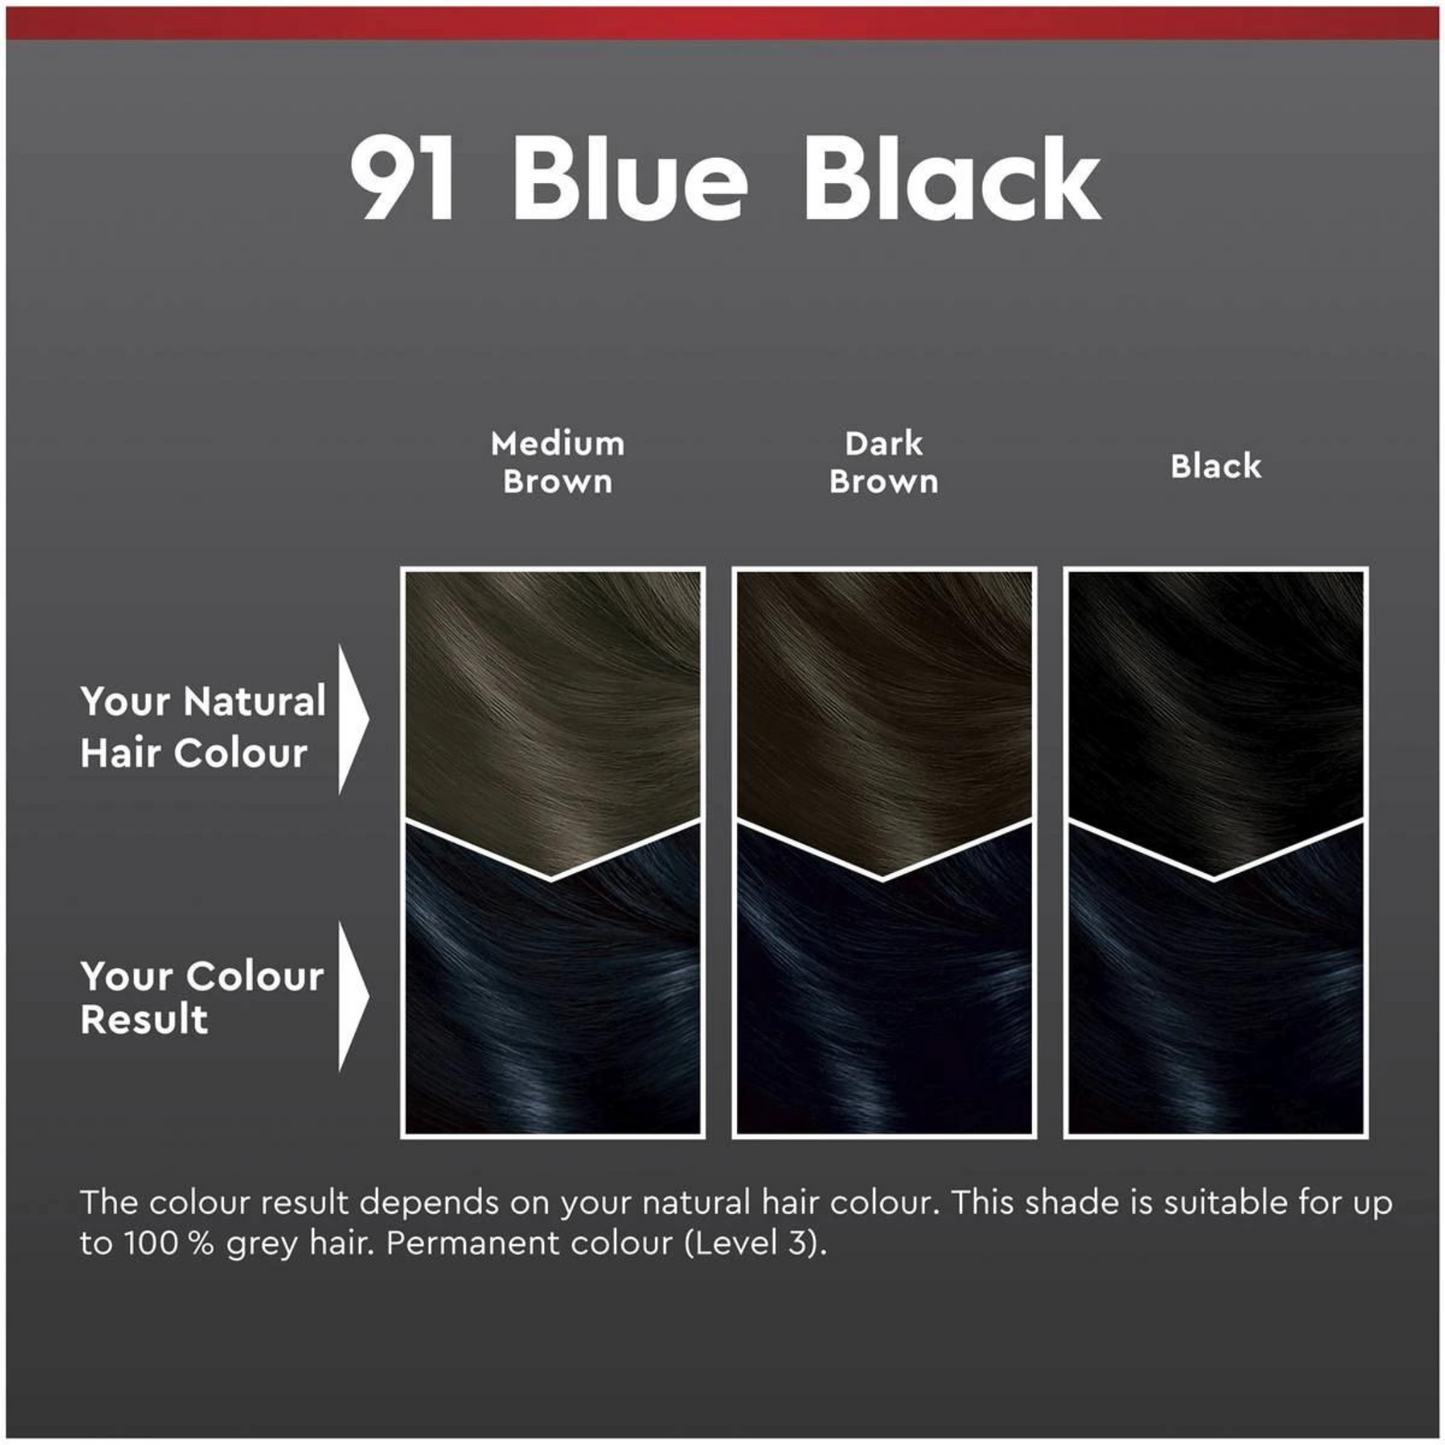 শোয়ার্জকফ ব্রিলিয়ান্স স্থায়ী চুলের রঙ 91 নীল কালো 1 কিট